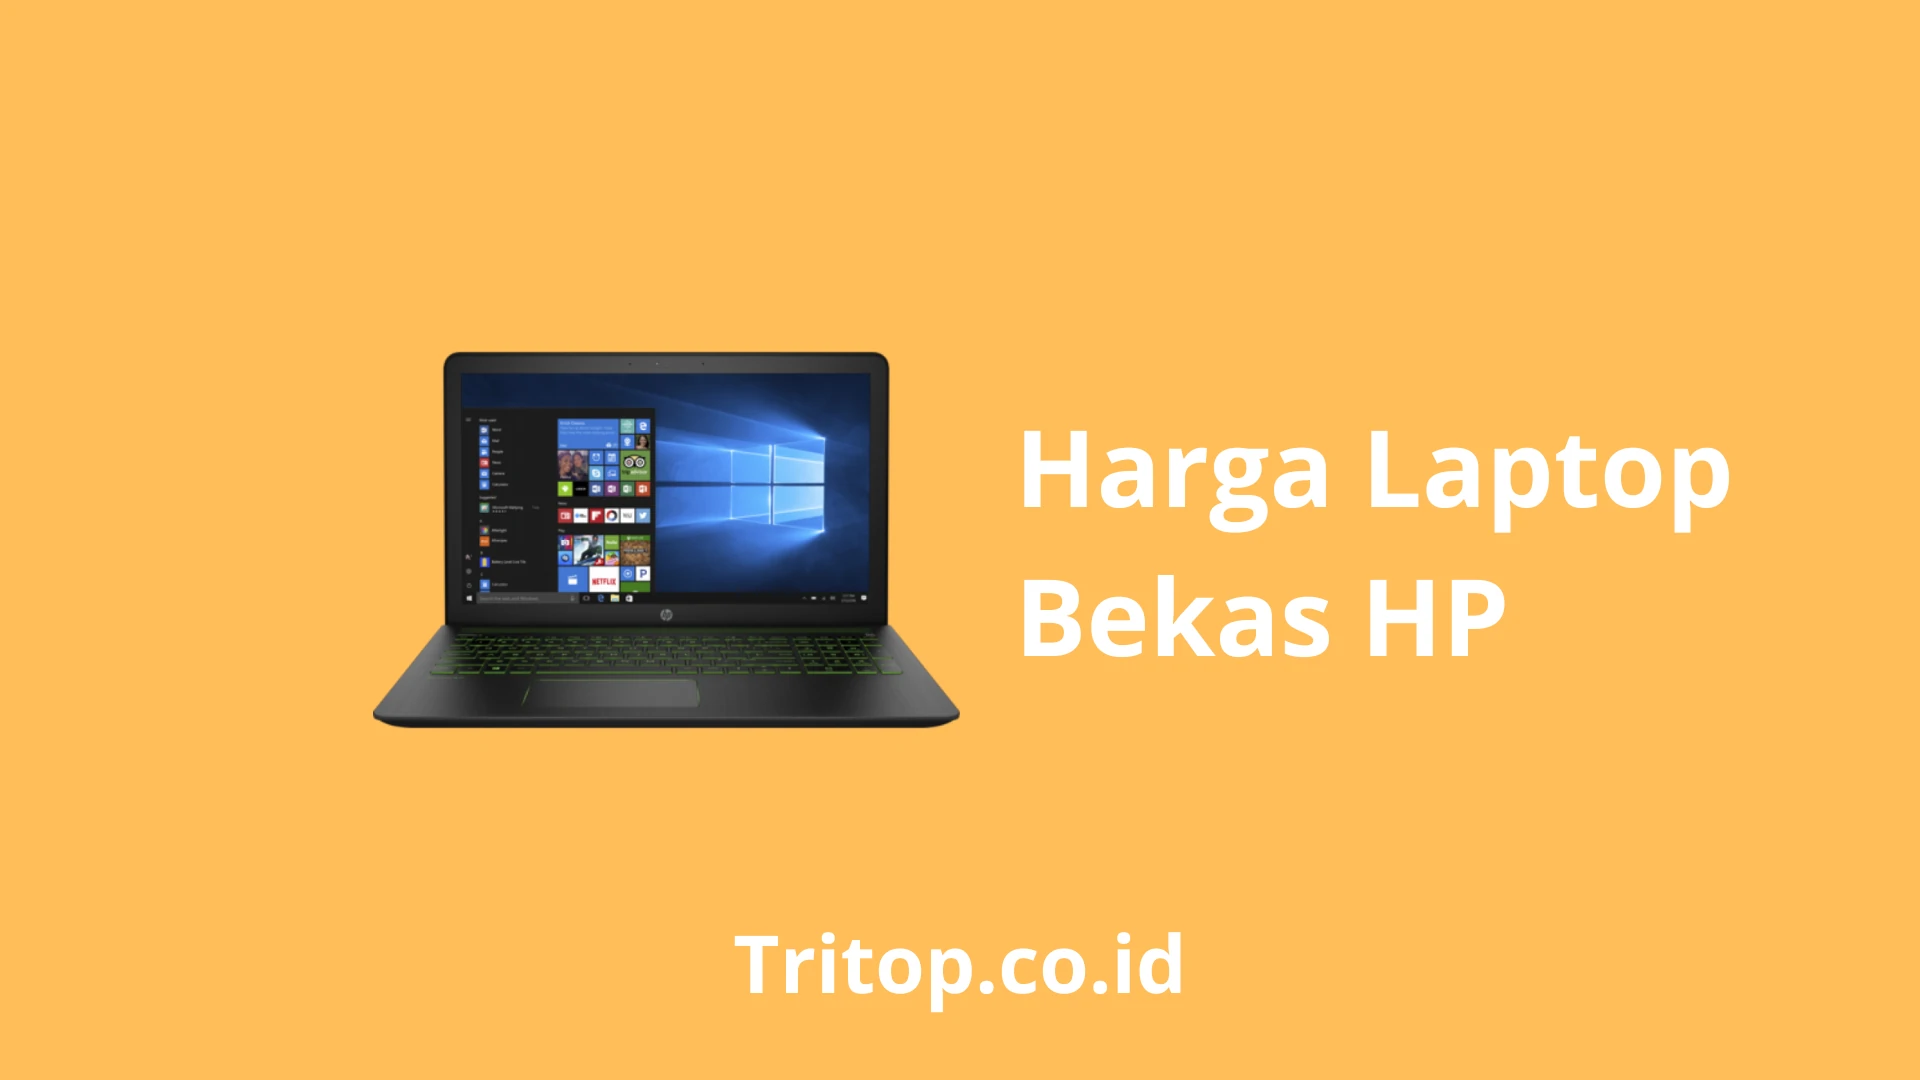 Harga Laptop Bekas HP Tritop.co.id